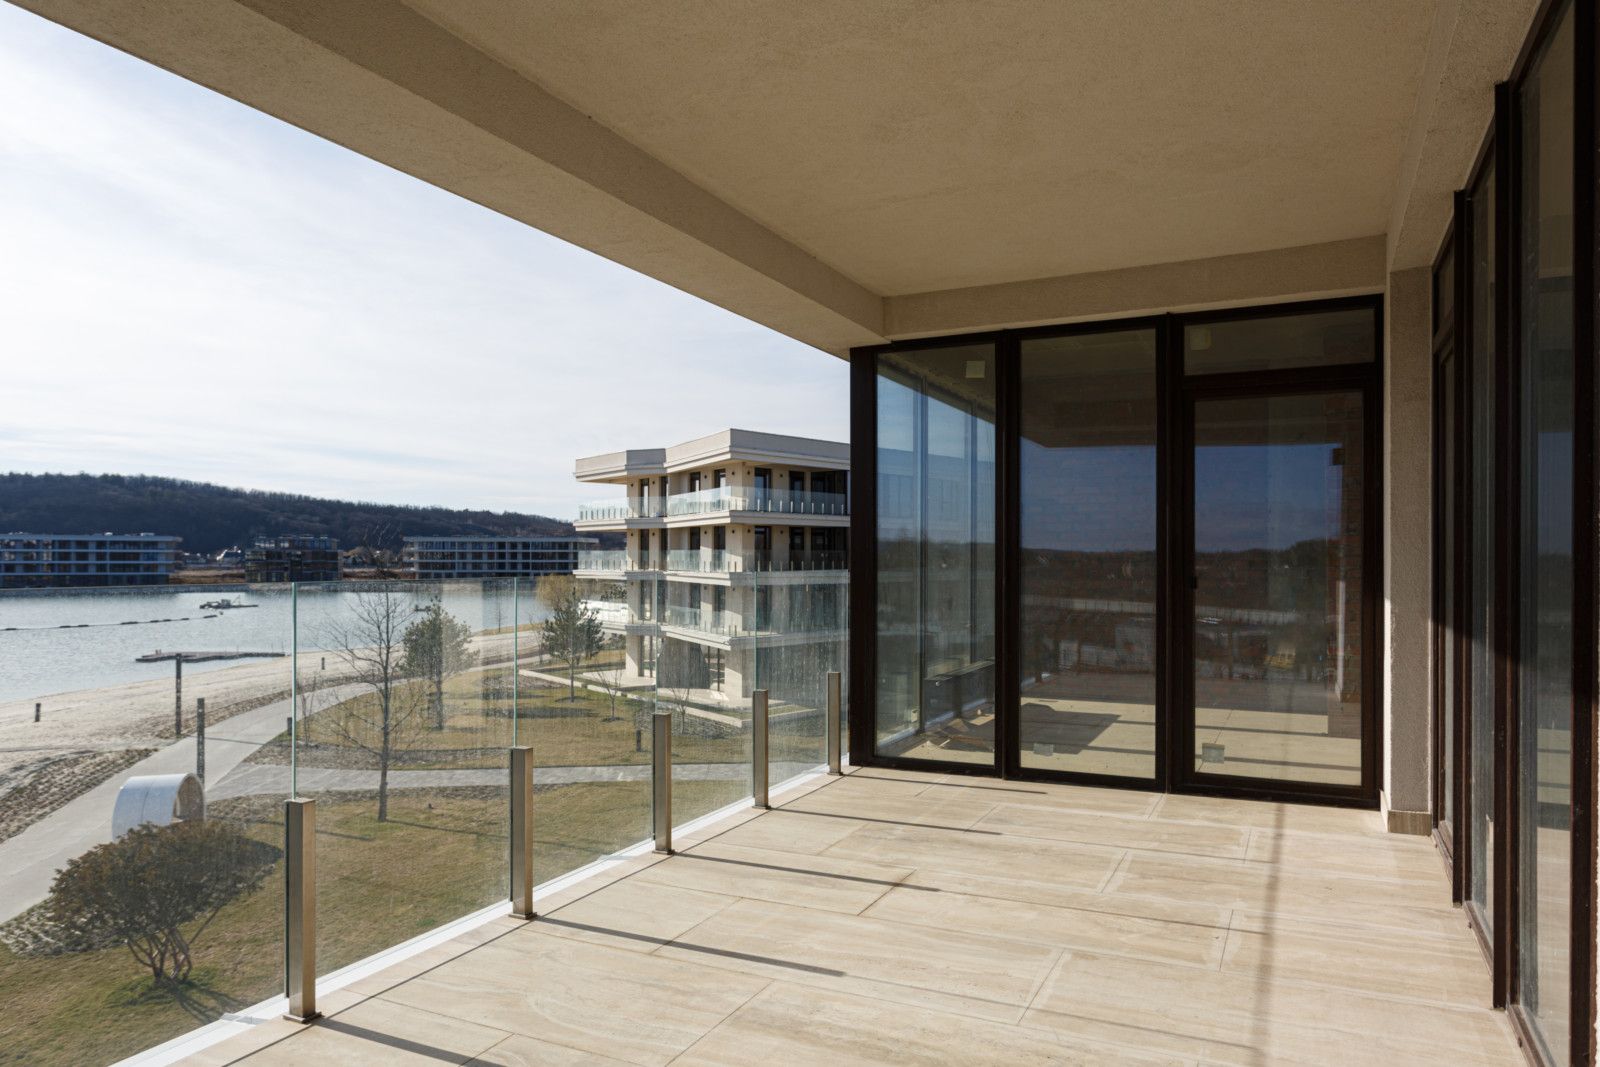 Ексклюзивна 2-к квартира-студія 92 м2 з панорамною терасою біля води